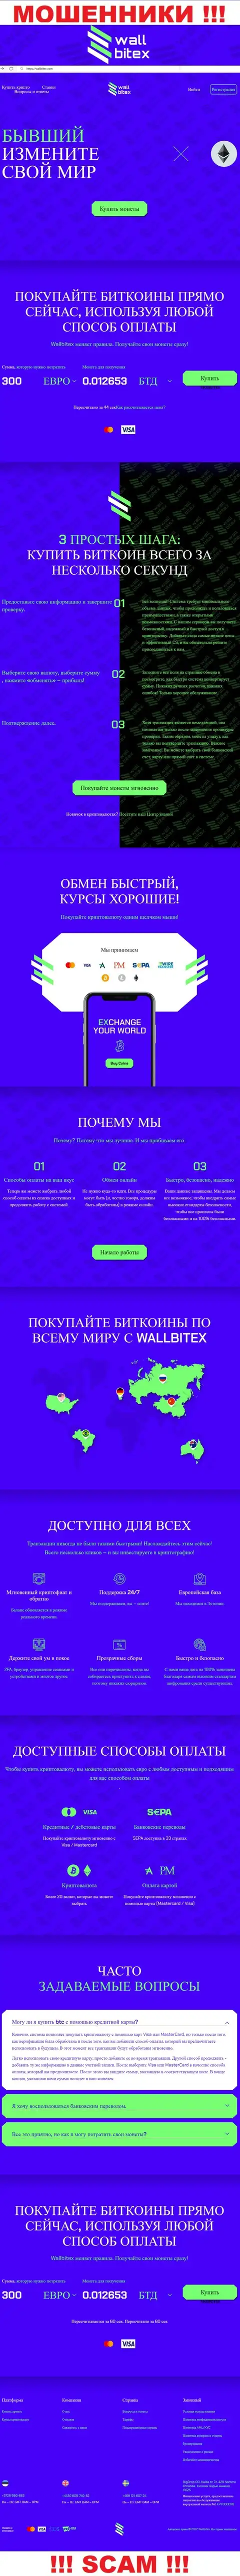 WallBitex Com - официальный сайт противоправно действующей организации WallBitex